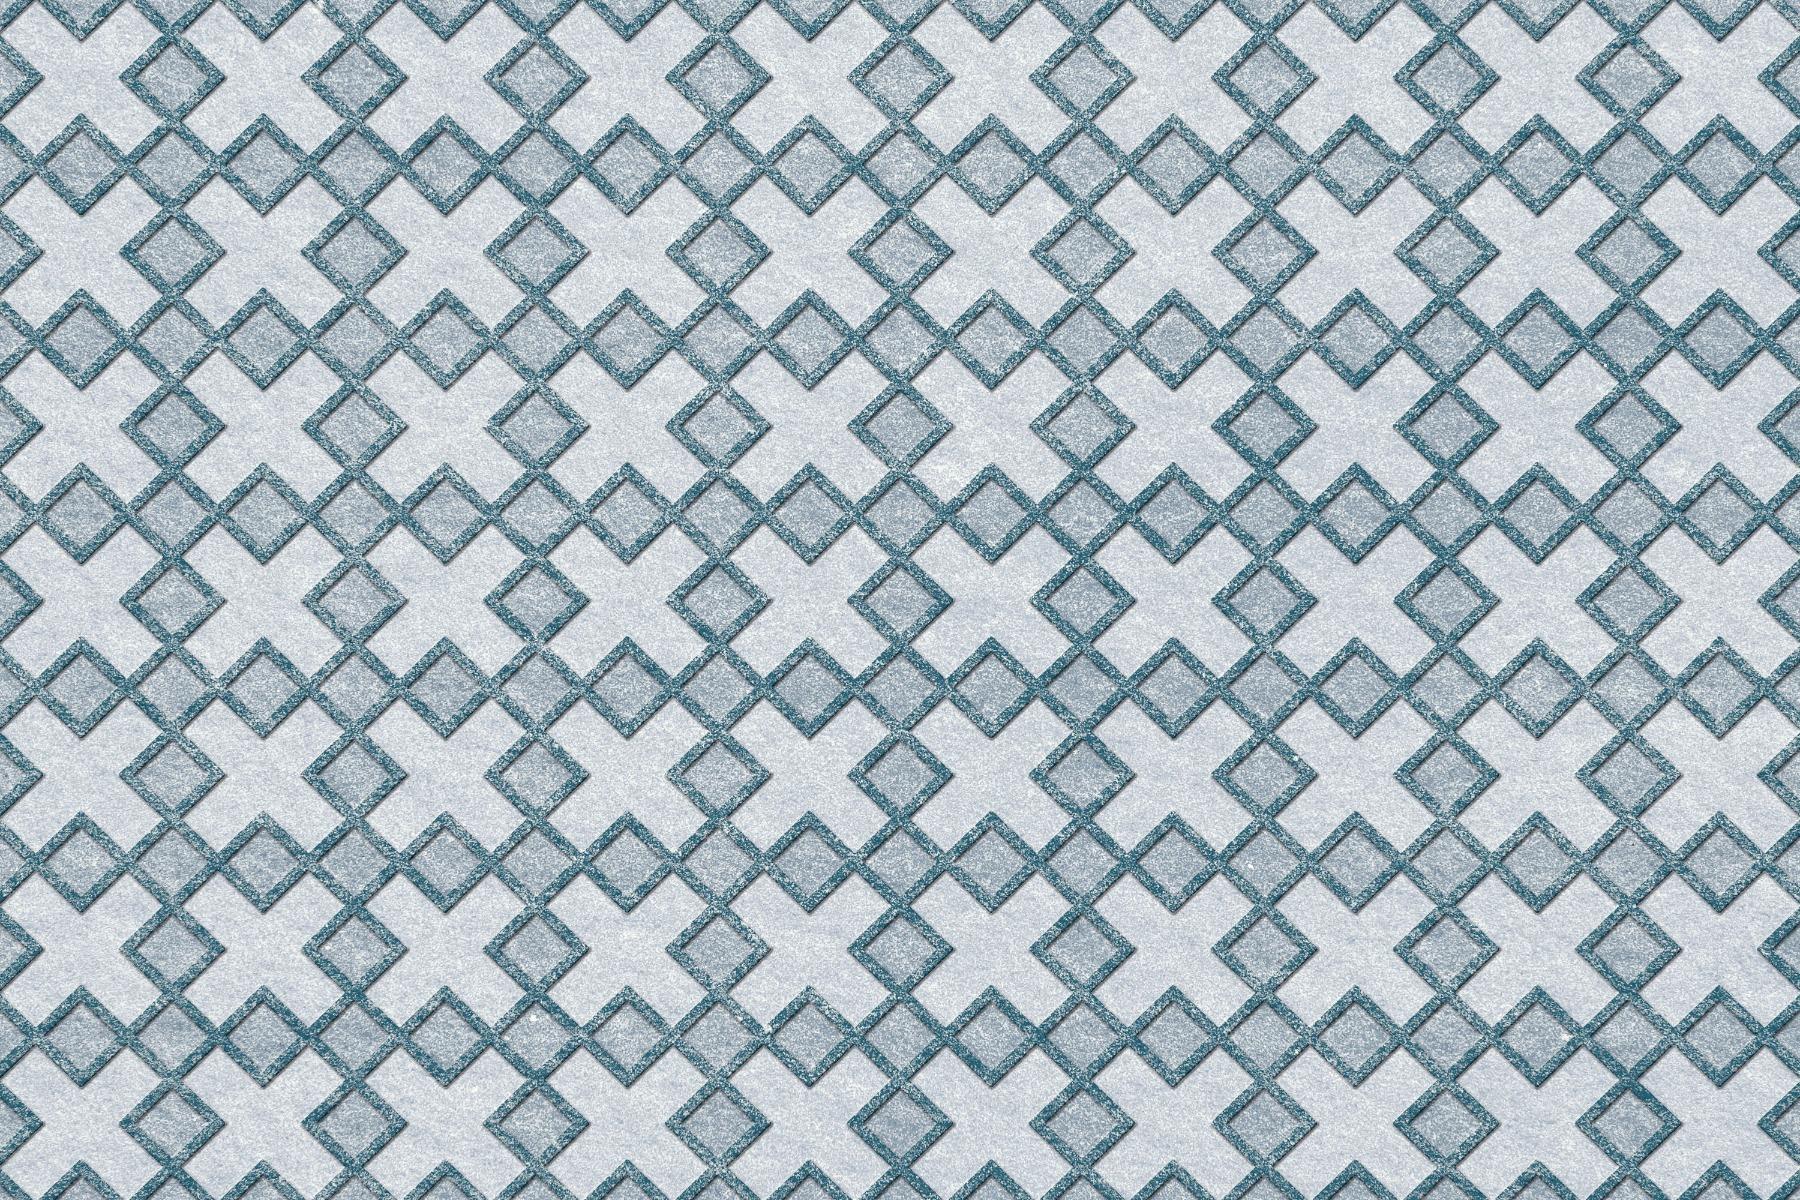 Blue Tiles for Bathroom Tiles, Kitchen Tiles, Balcony Tiles